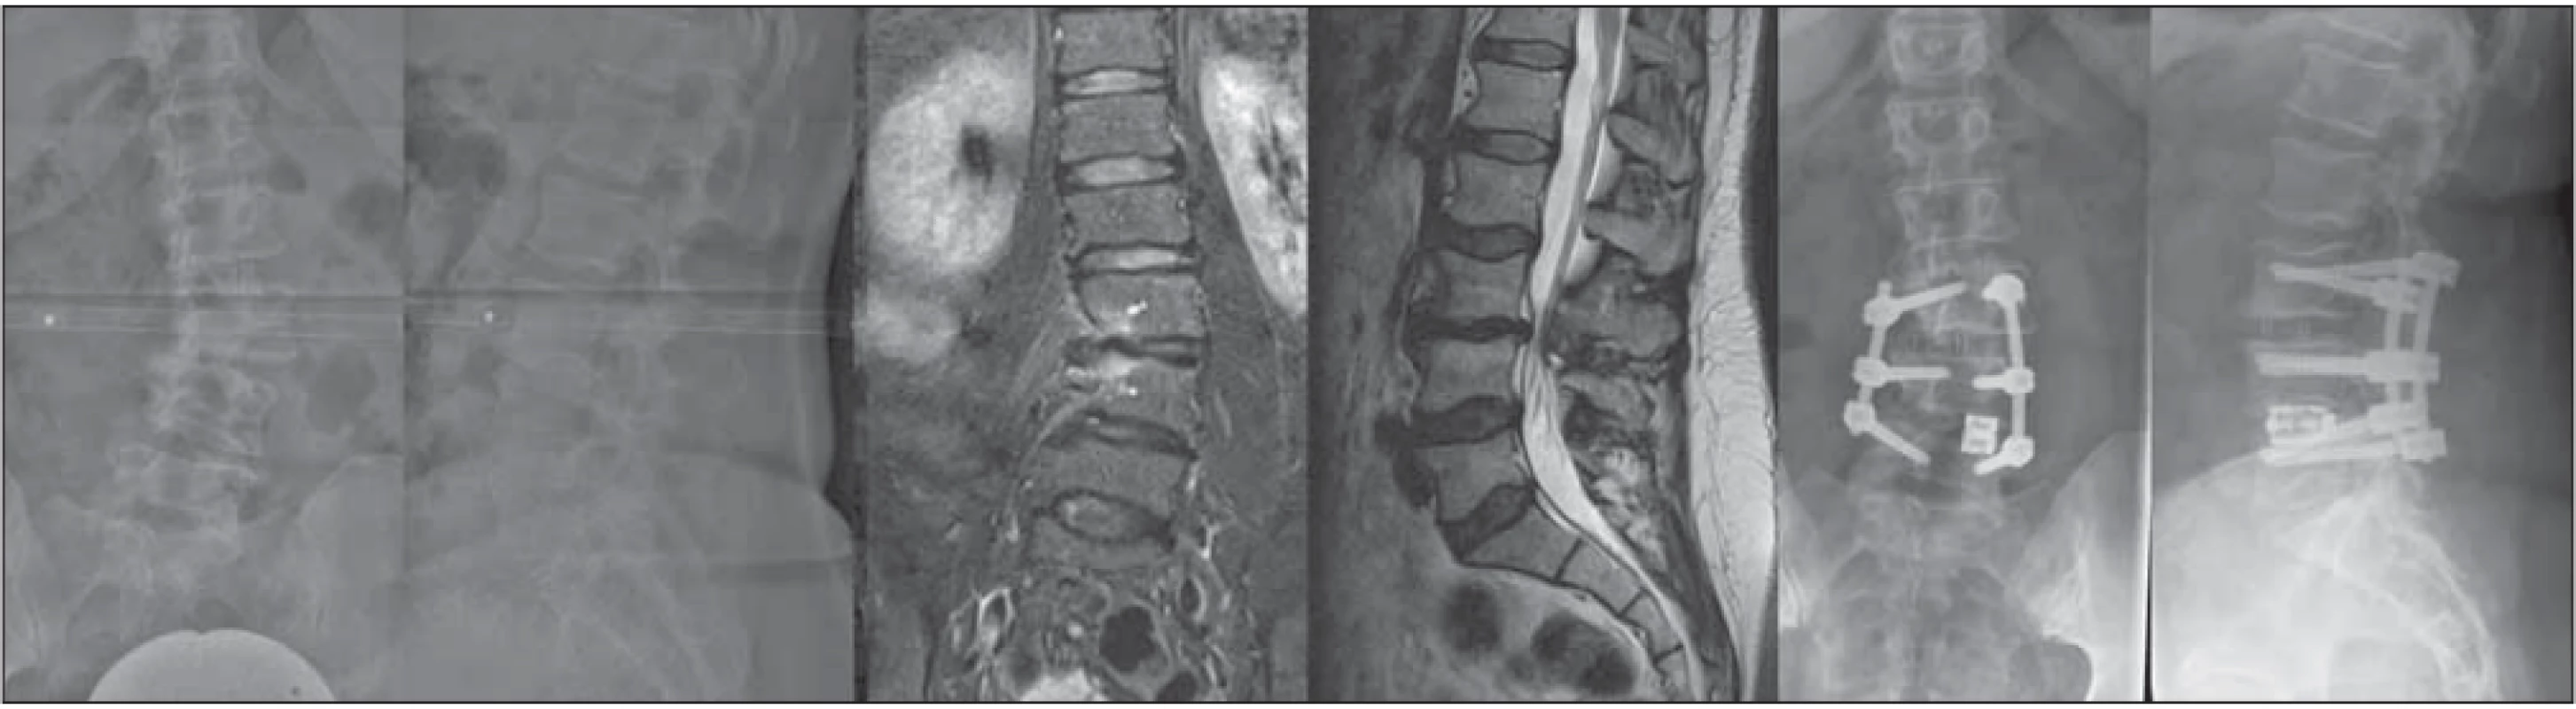 55-ročná pacientka s radikulárnymi bolesťami L3 a neurogénnymi klaudikáciami, grafi cký nález jednostrannej subartikulárnej stenózy a foraminálnej stenózy L3/4 vpravo, po distrakcii v segmente L4/5 vľavo expandibilnou PLIF klietkou, dekompresiou a XLIF
L3/4 významná korekcia deformity, subj. zmiernenie bolestivého syndrómu.<br>
Fig. 1. 55-year old female patient with radicular pain in dermatomes L3 with neurogenic claudication, and with imaging fi ndings of unilateral subarticular stenosis and right foraminal stenosis in segment L3/4. After distraction of segment L4/5 on the left with an expandible PLIF
cage, decompression and XLIF of L3/4 was performed with signifi cant correction of deformity and subjective relief of the pain syndrome.